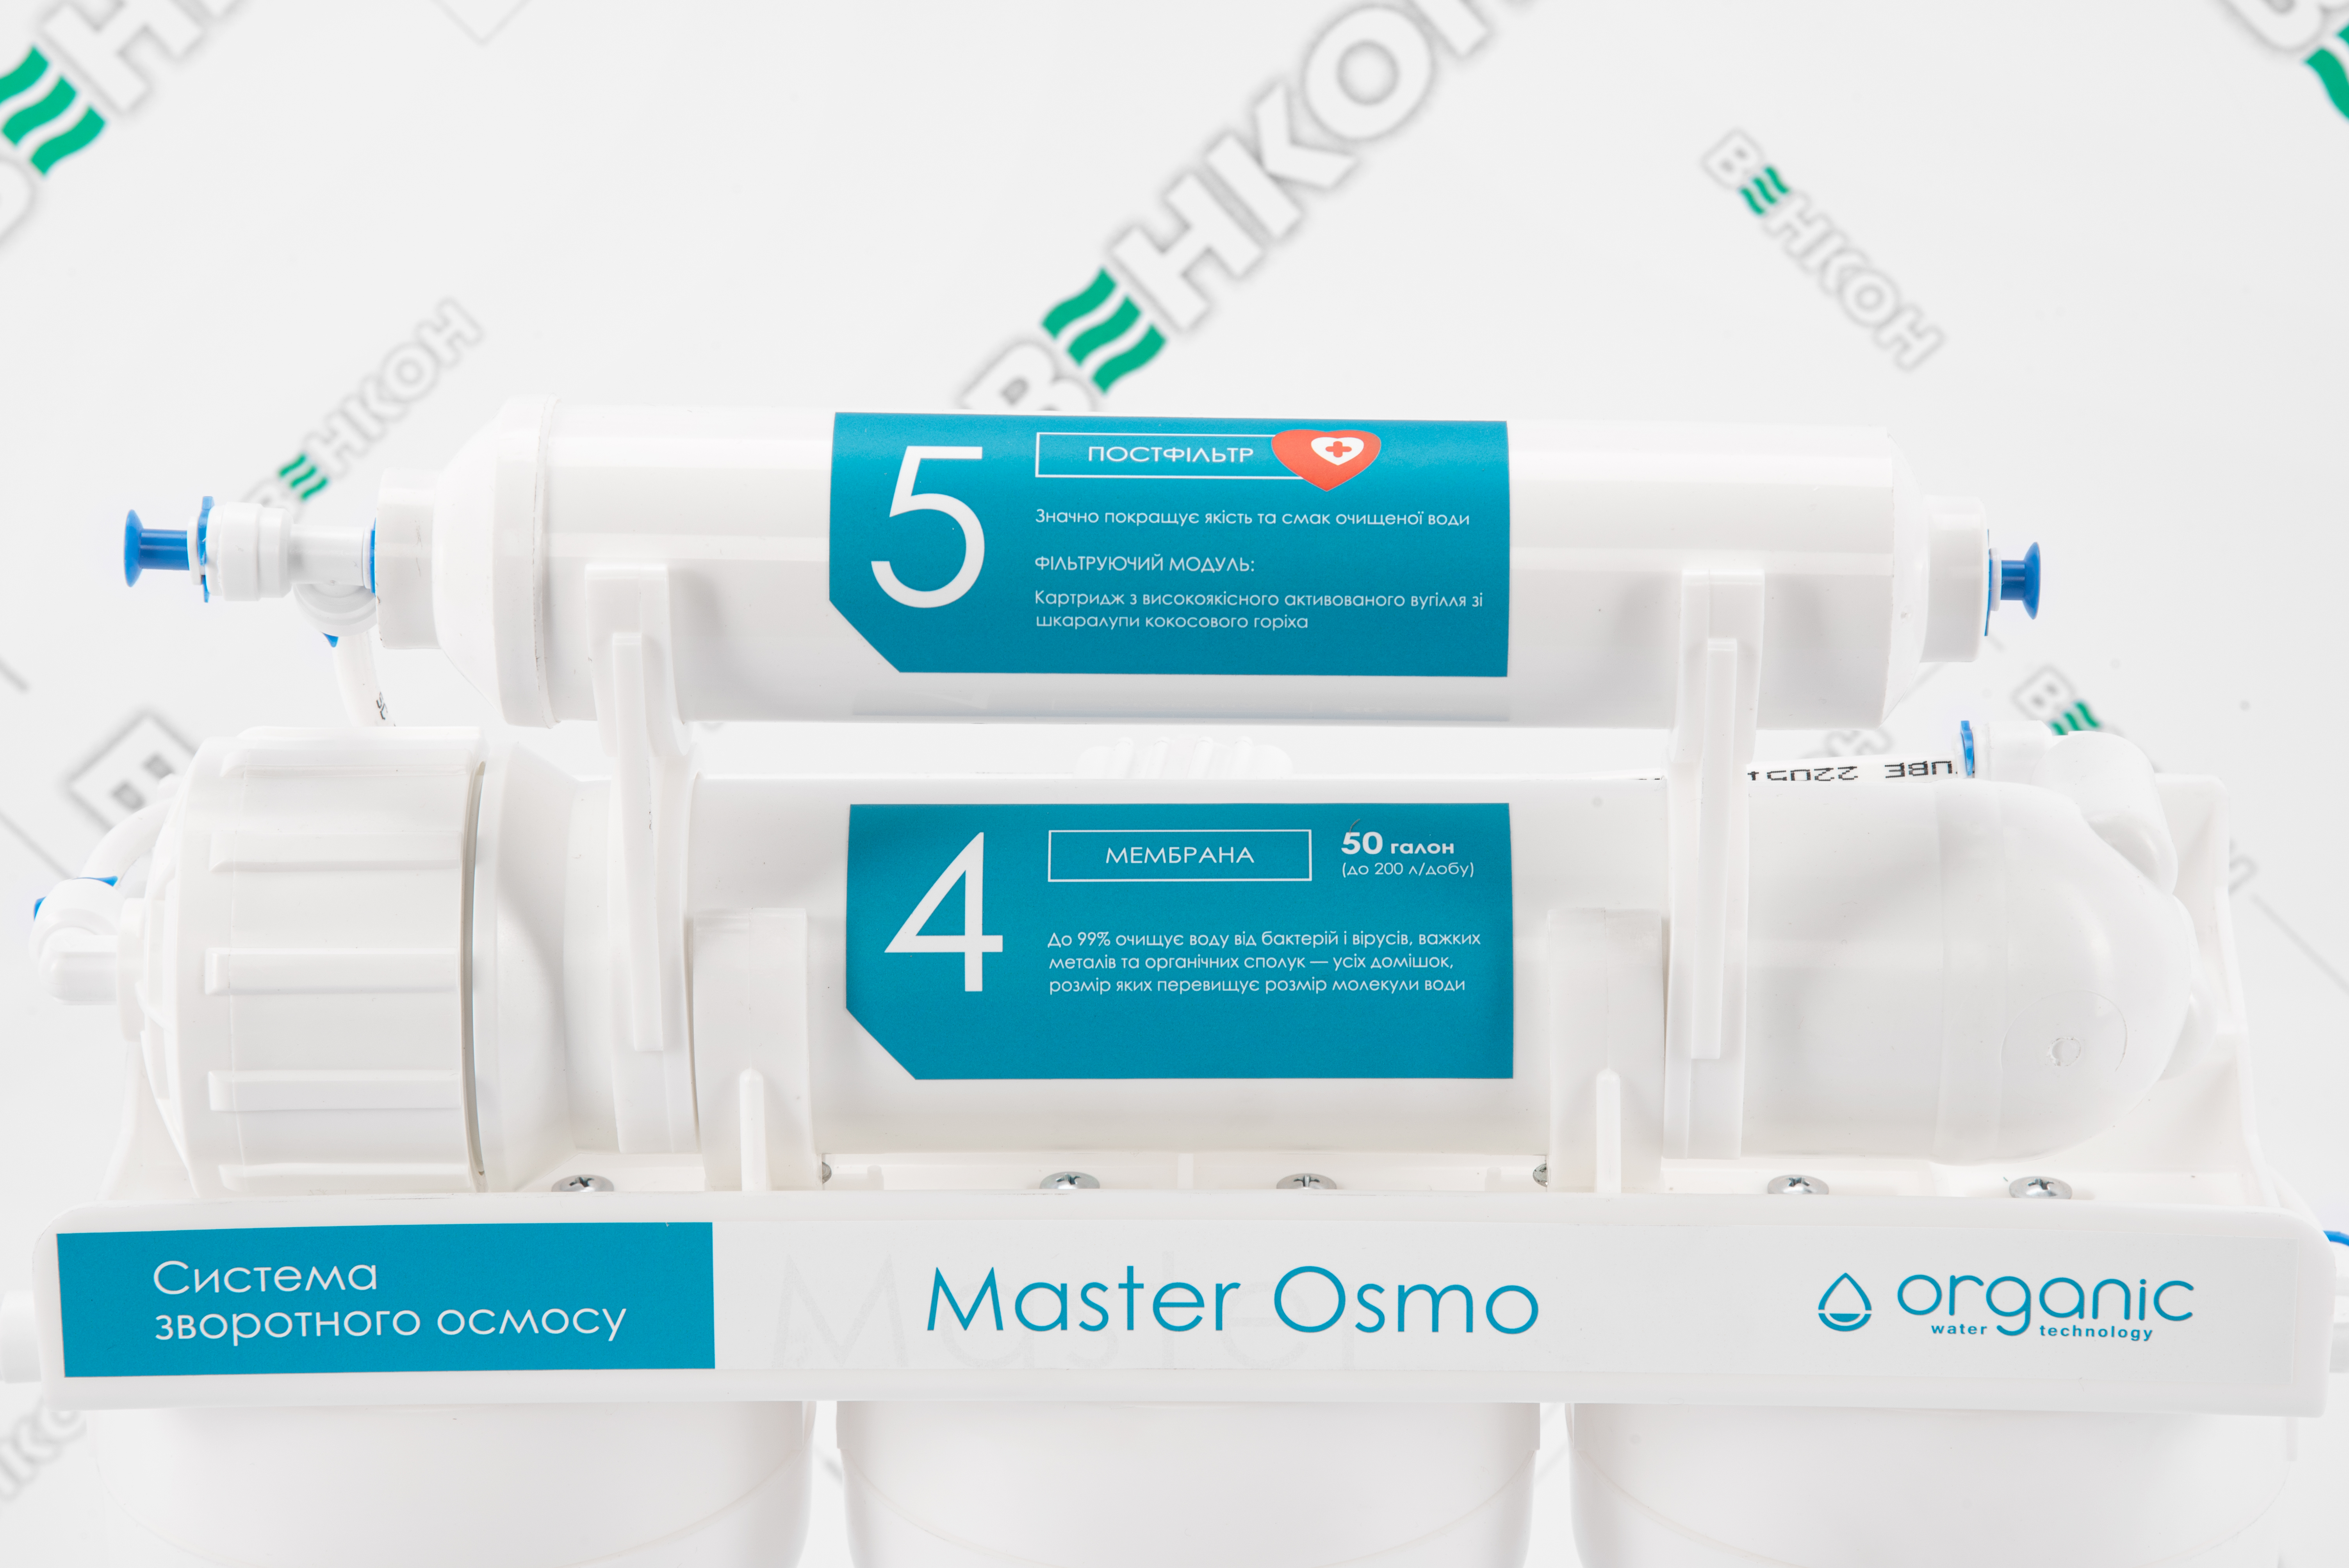 Фільтр для води Organic Master Osmo 5 відгуки - зображення 5